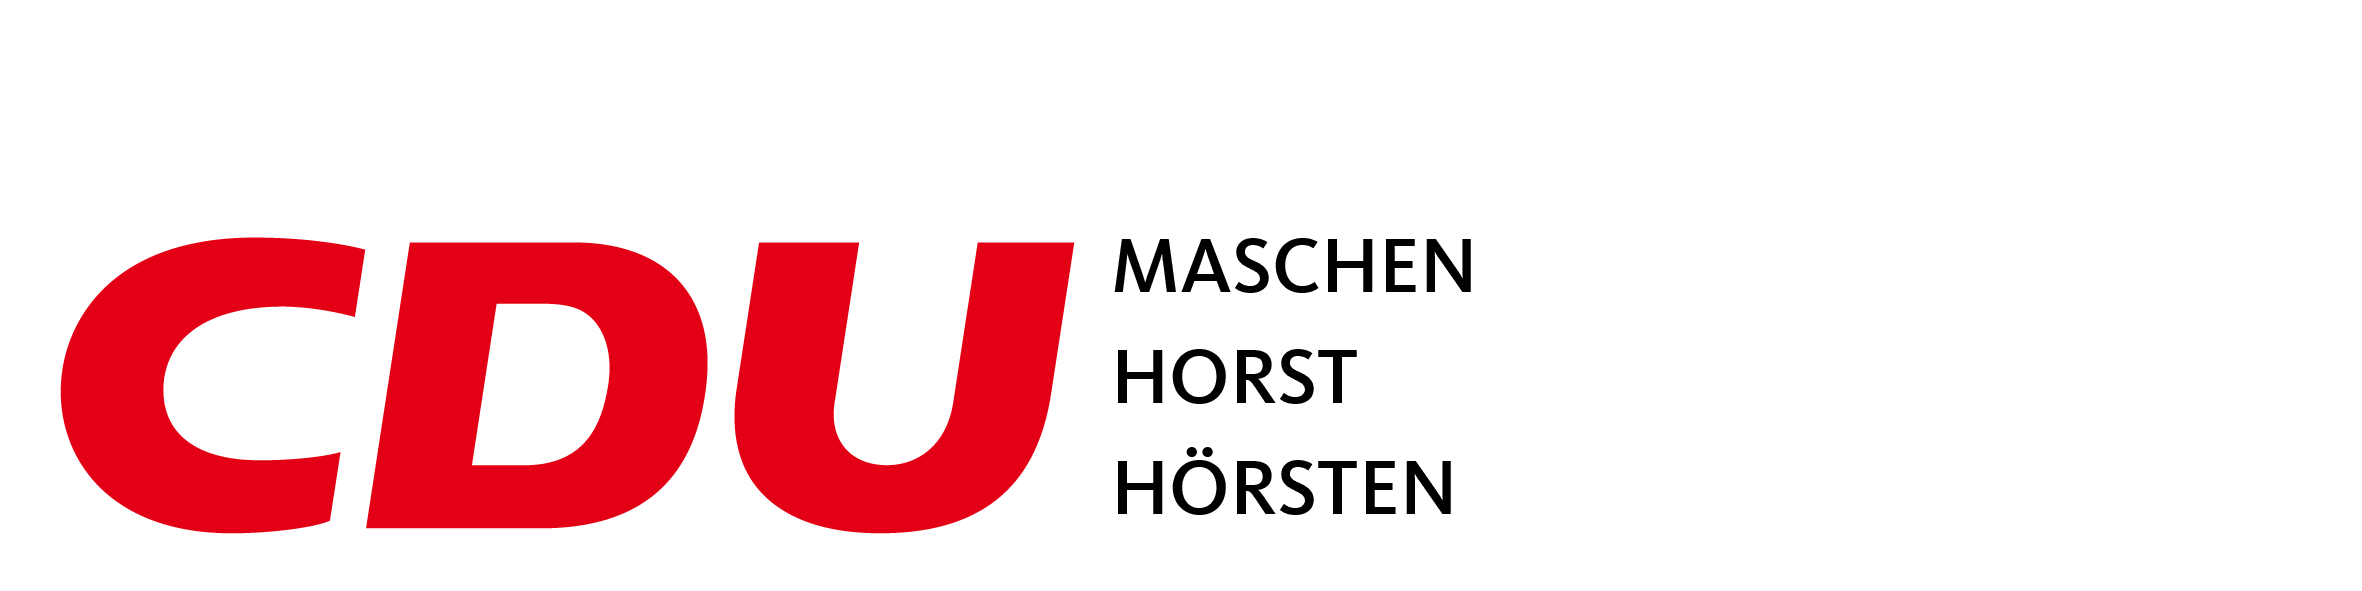 CDU Maschen Horst Hörsten